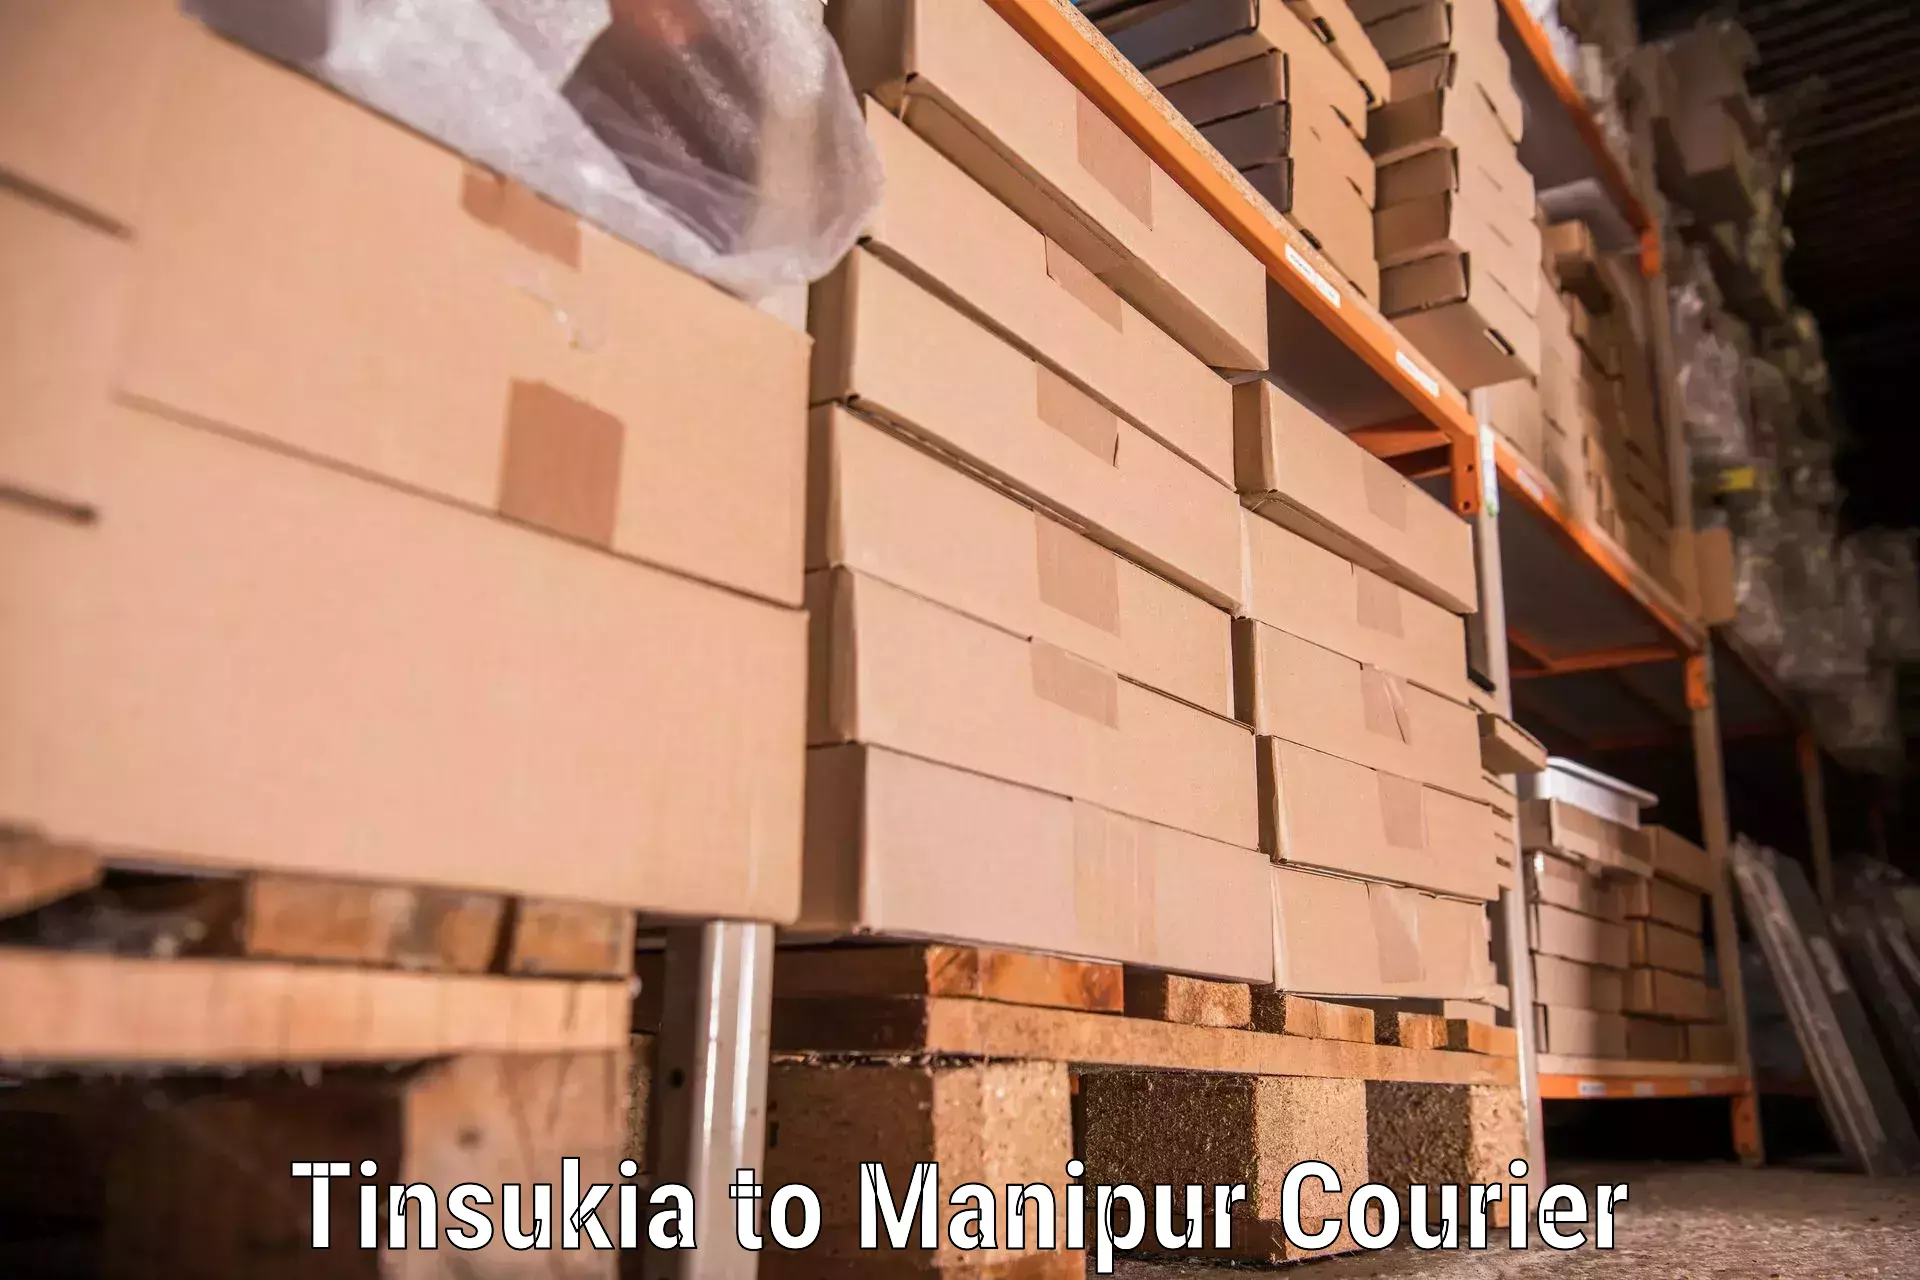 Trusted household movers Tinsukia to Jiribam